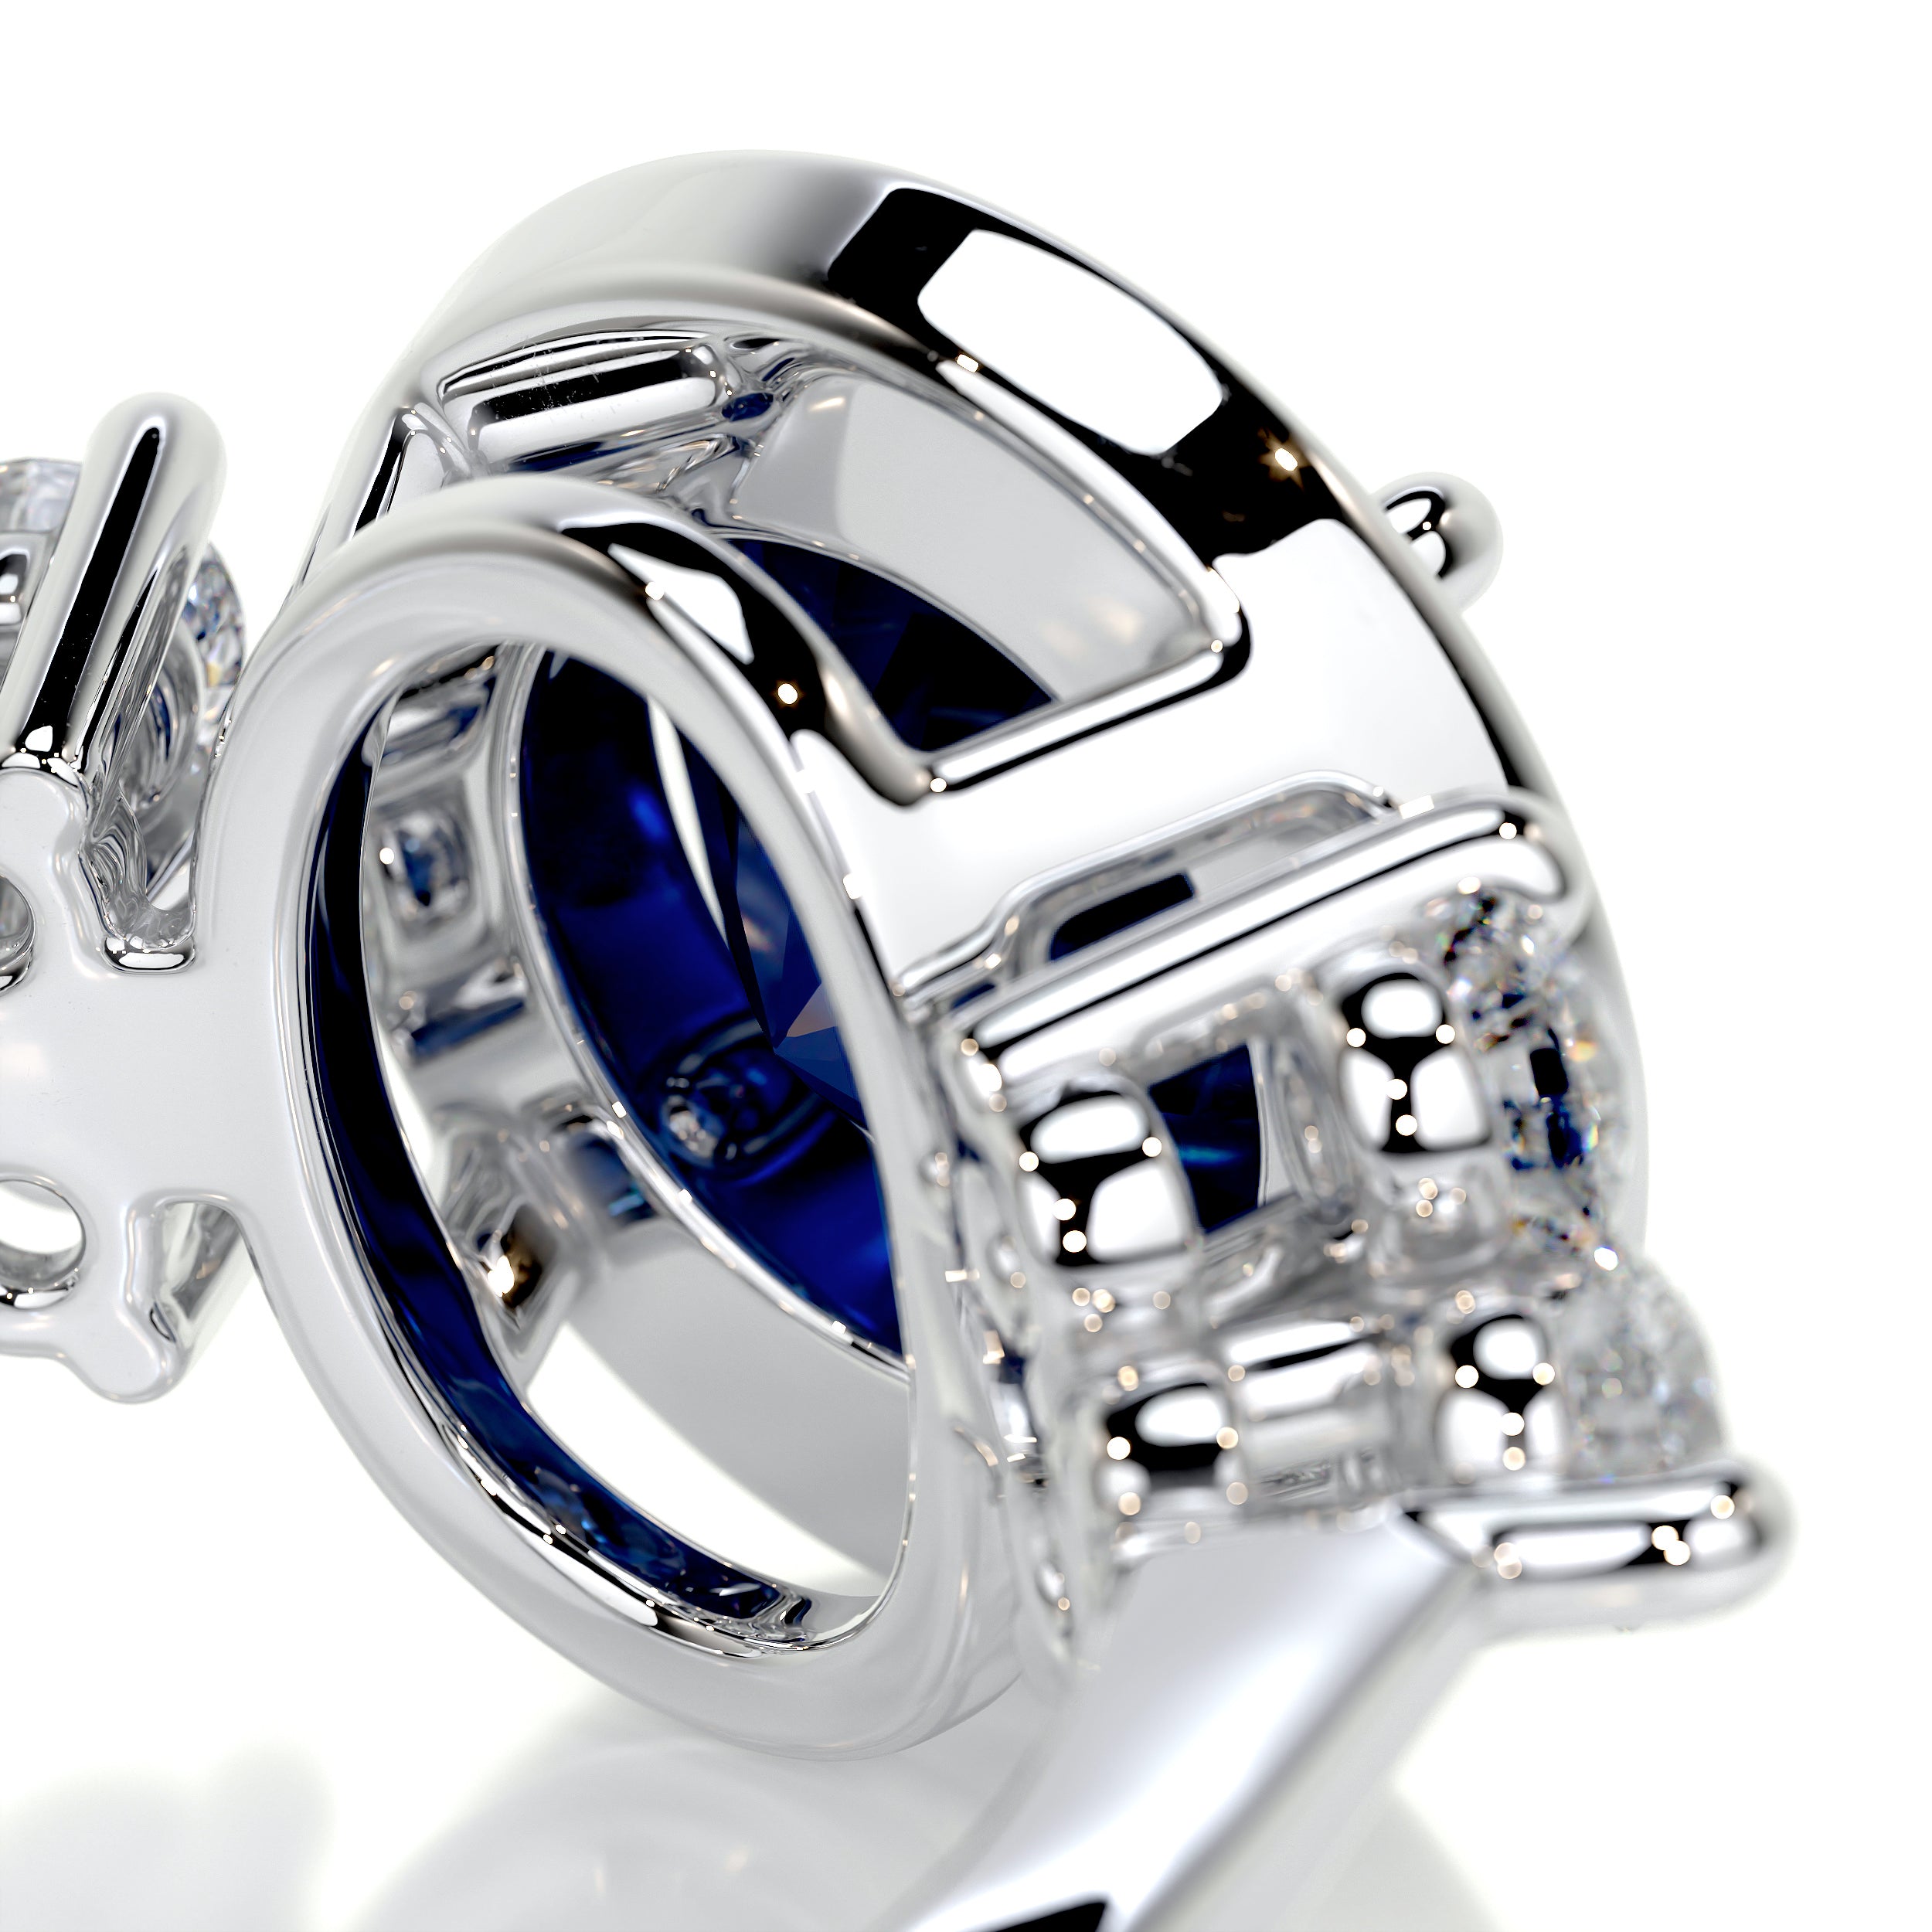 Ivy Gemstone & Diamonds Ring   (2 Carat) -14K White Gold